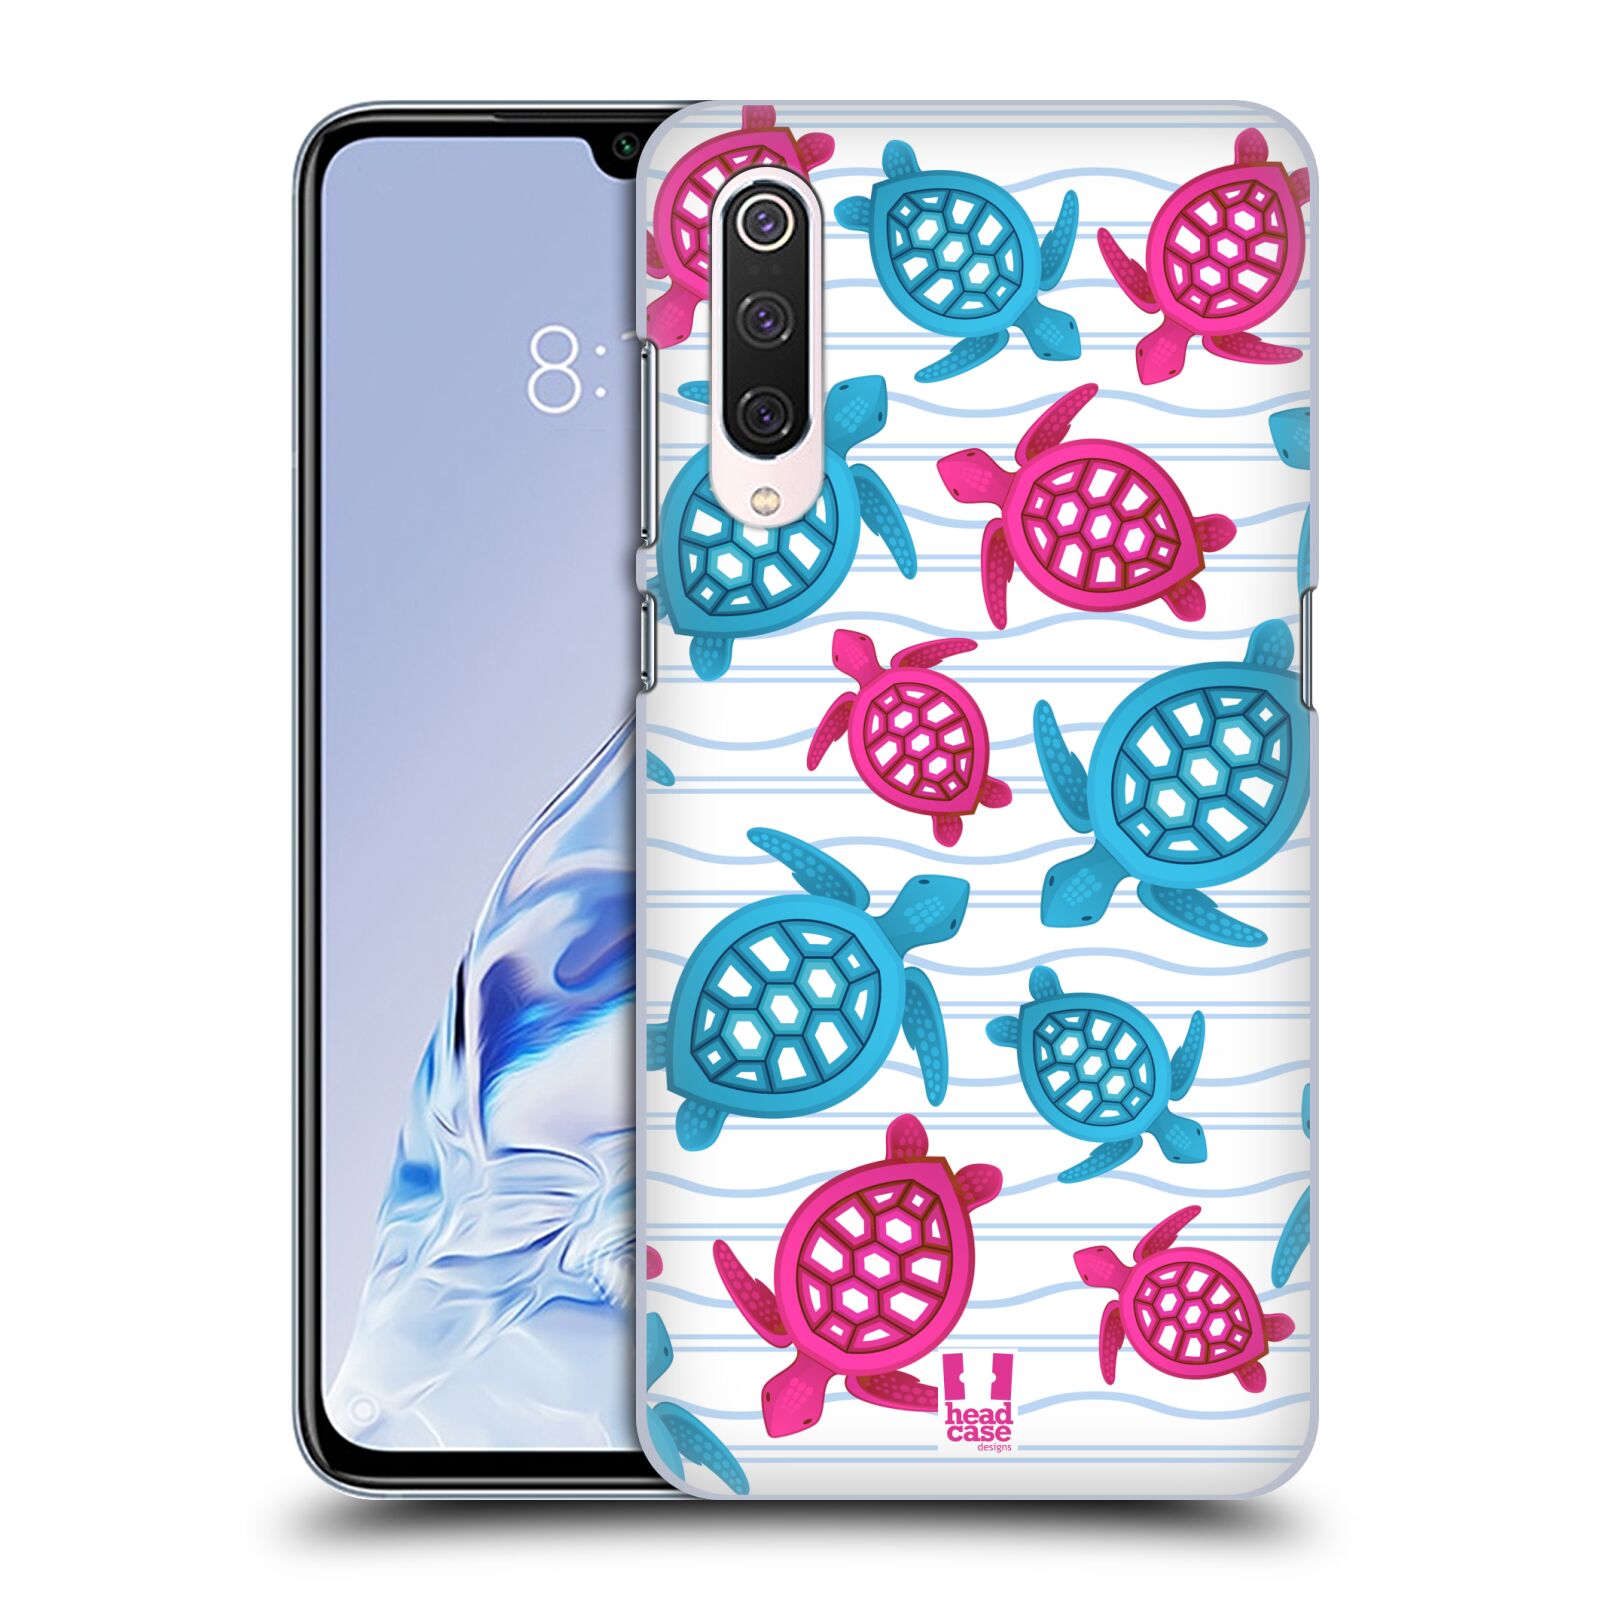 Zadní obal pro mobil Xiaomi Mi 9 PRO - HEAD CASE - kreslený mořský vzor želvičky